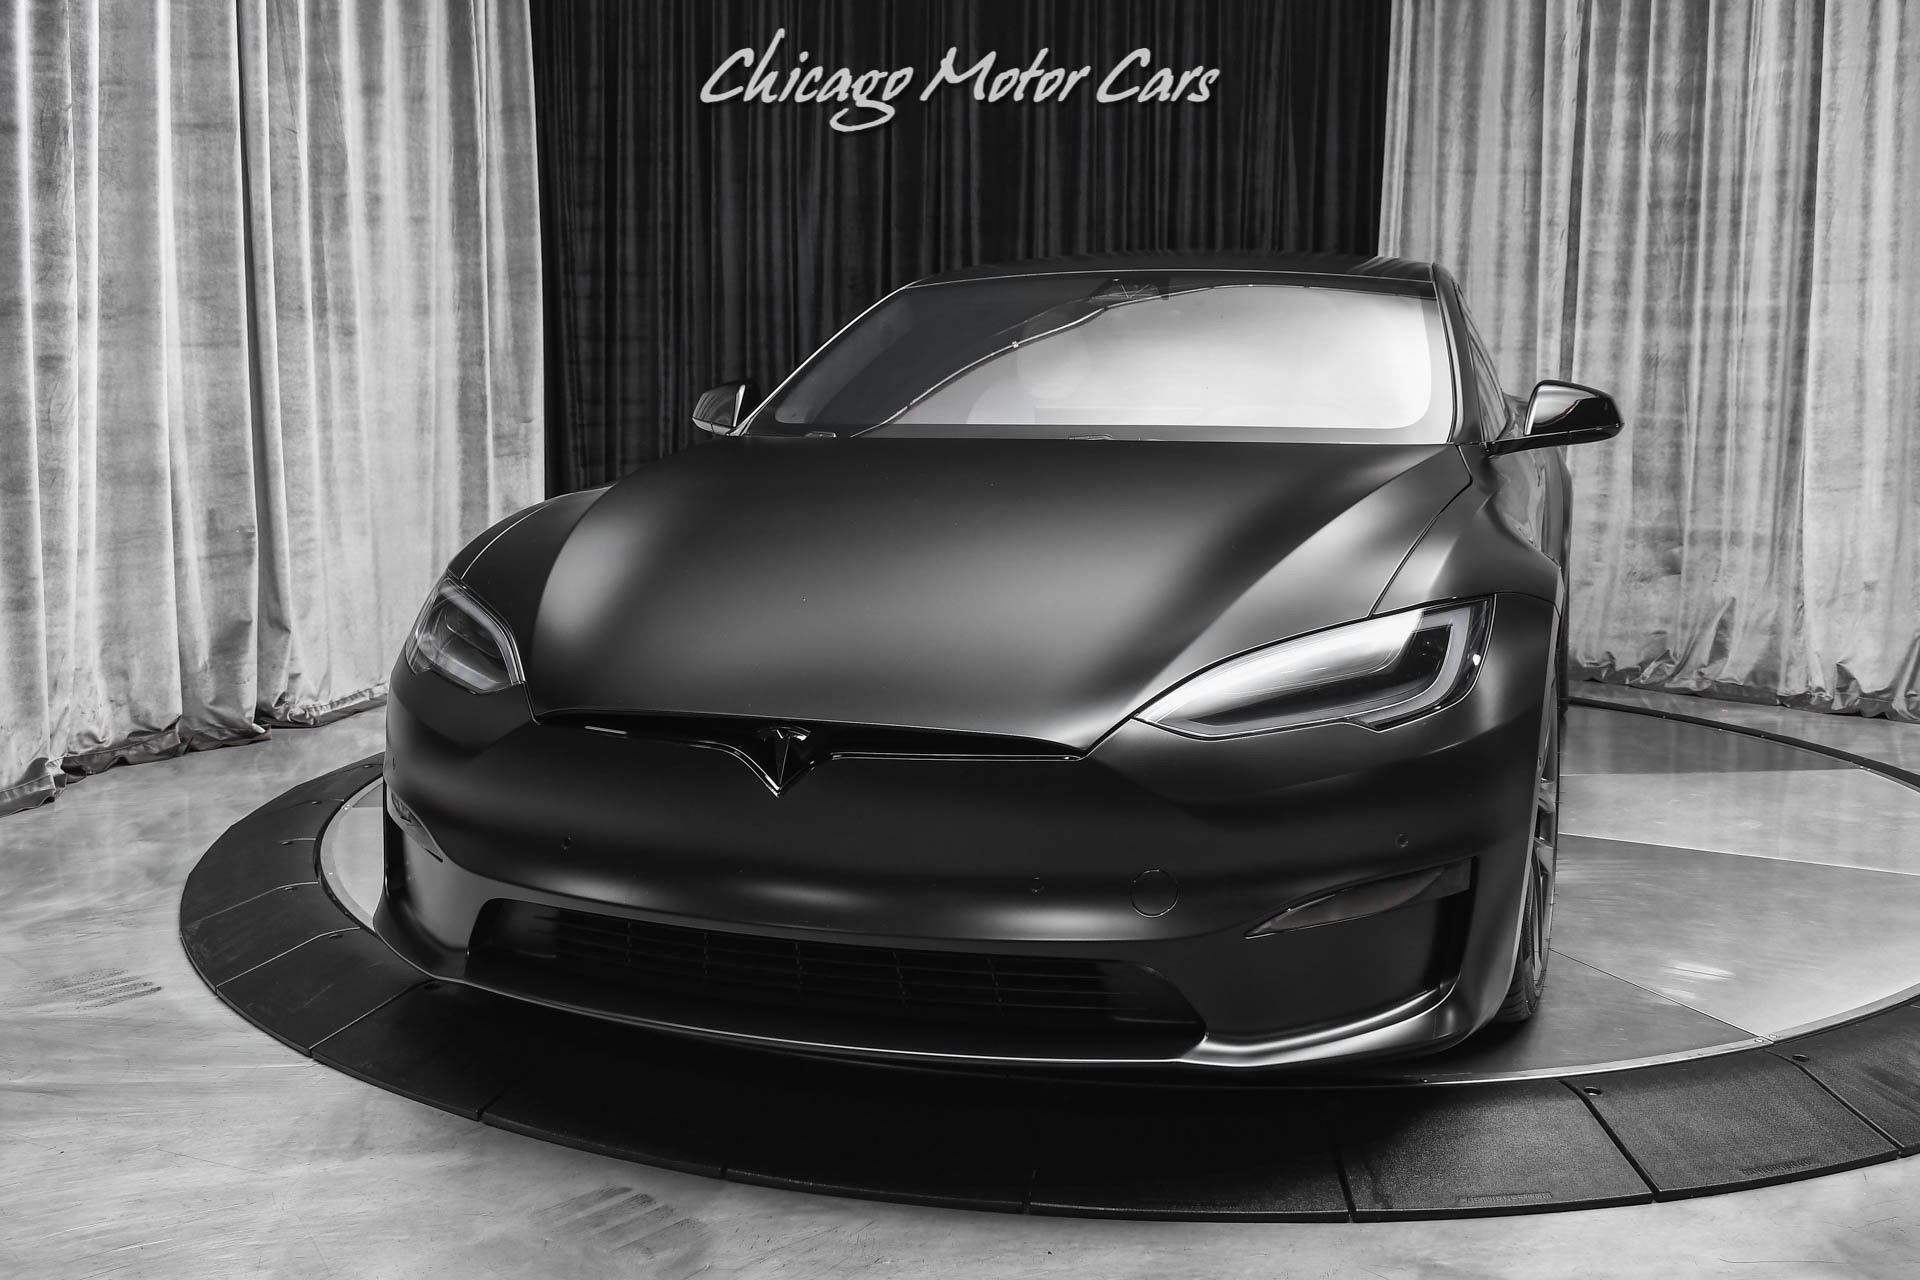 Used 2022 Tesla Model S Plaid Sedan SATIN BLACK! 1,020 HP! Worlds